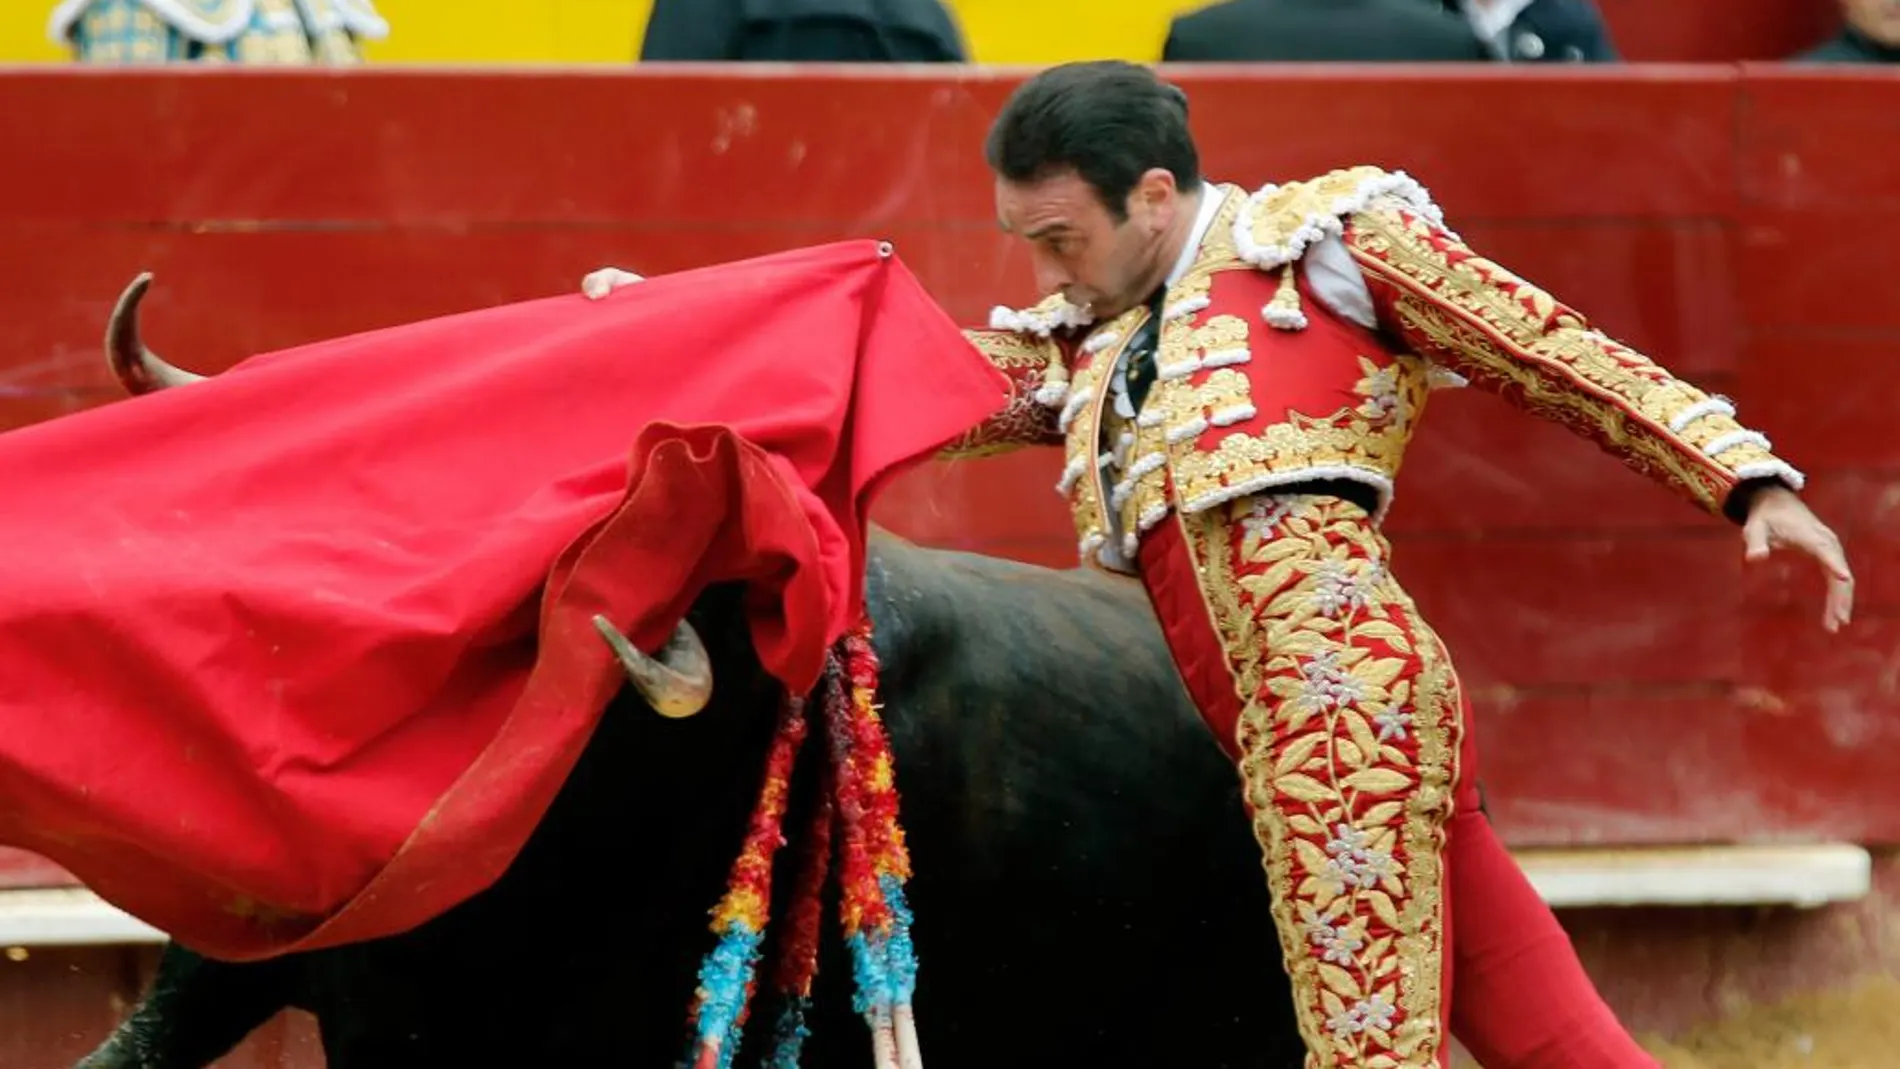 Solitaria oreja. El maestro Enrique Ponce ejecuta un pase de pecho al de Cuvillo en su única actuación en la Feria de Fallas